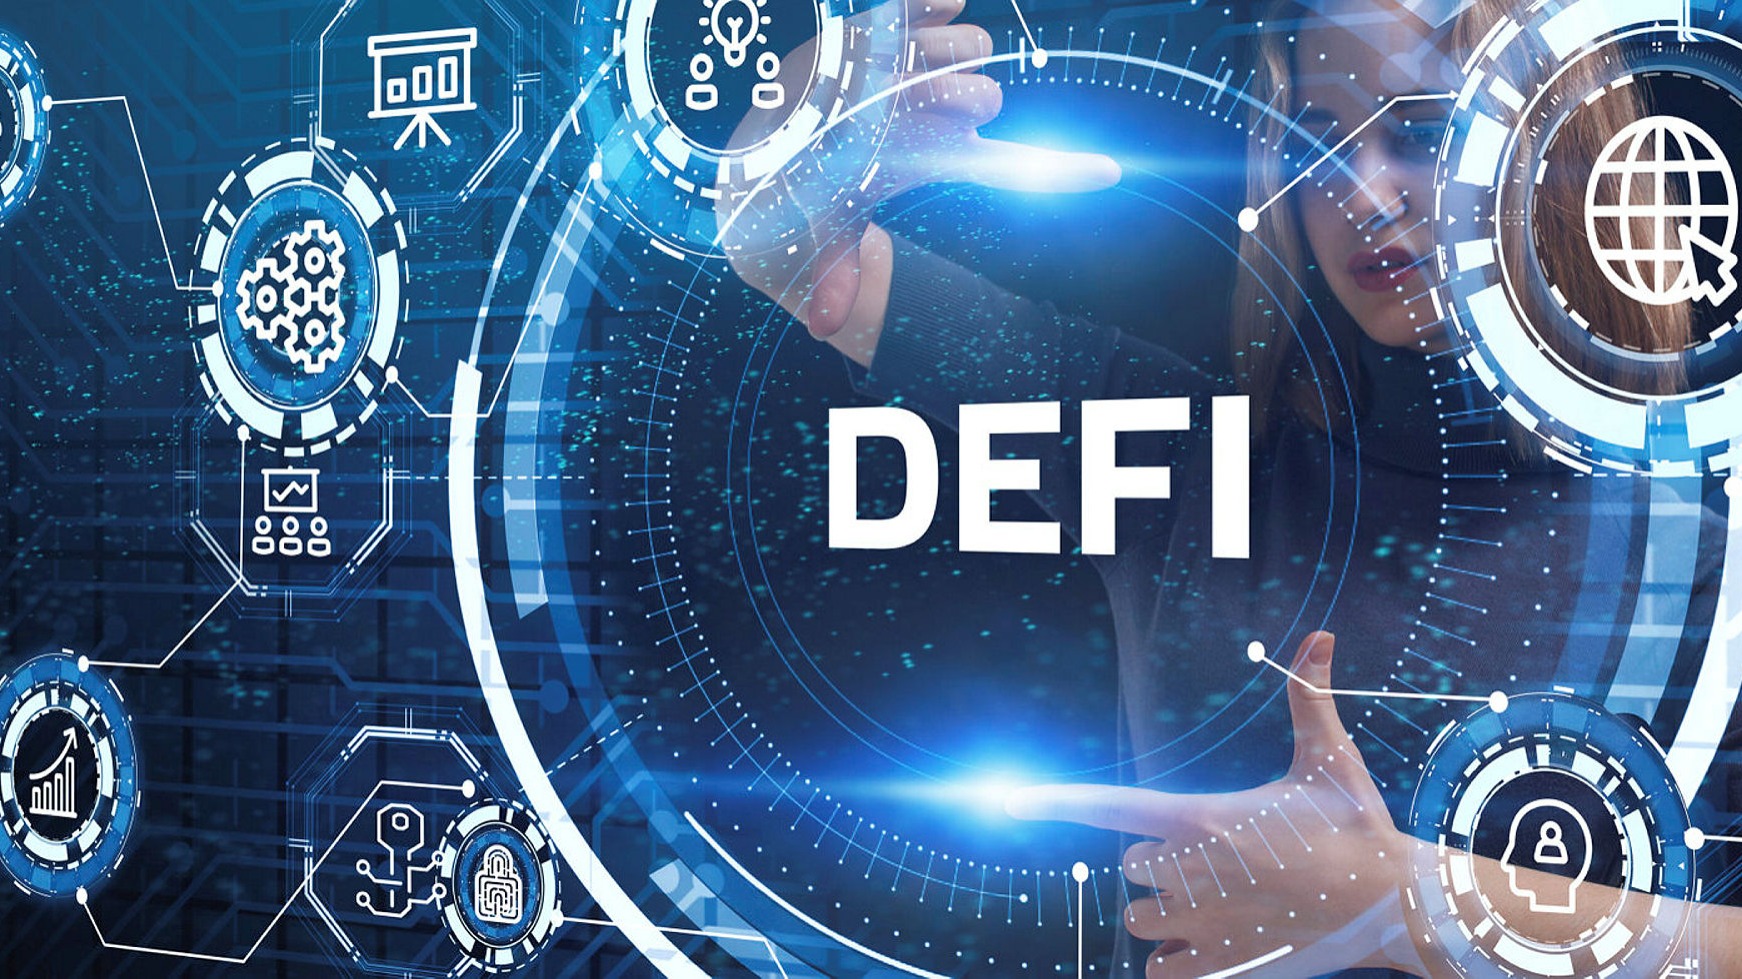 Децентрализираното финансиране DeFi се отнася до всички видове DeFi услуги